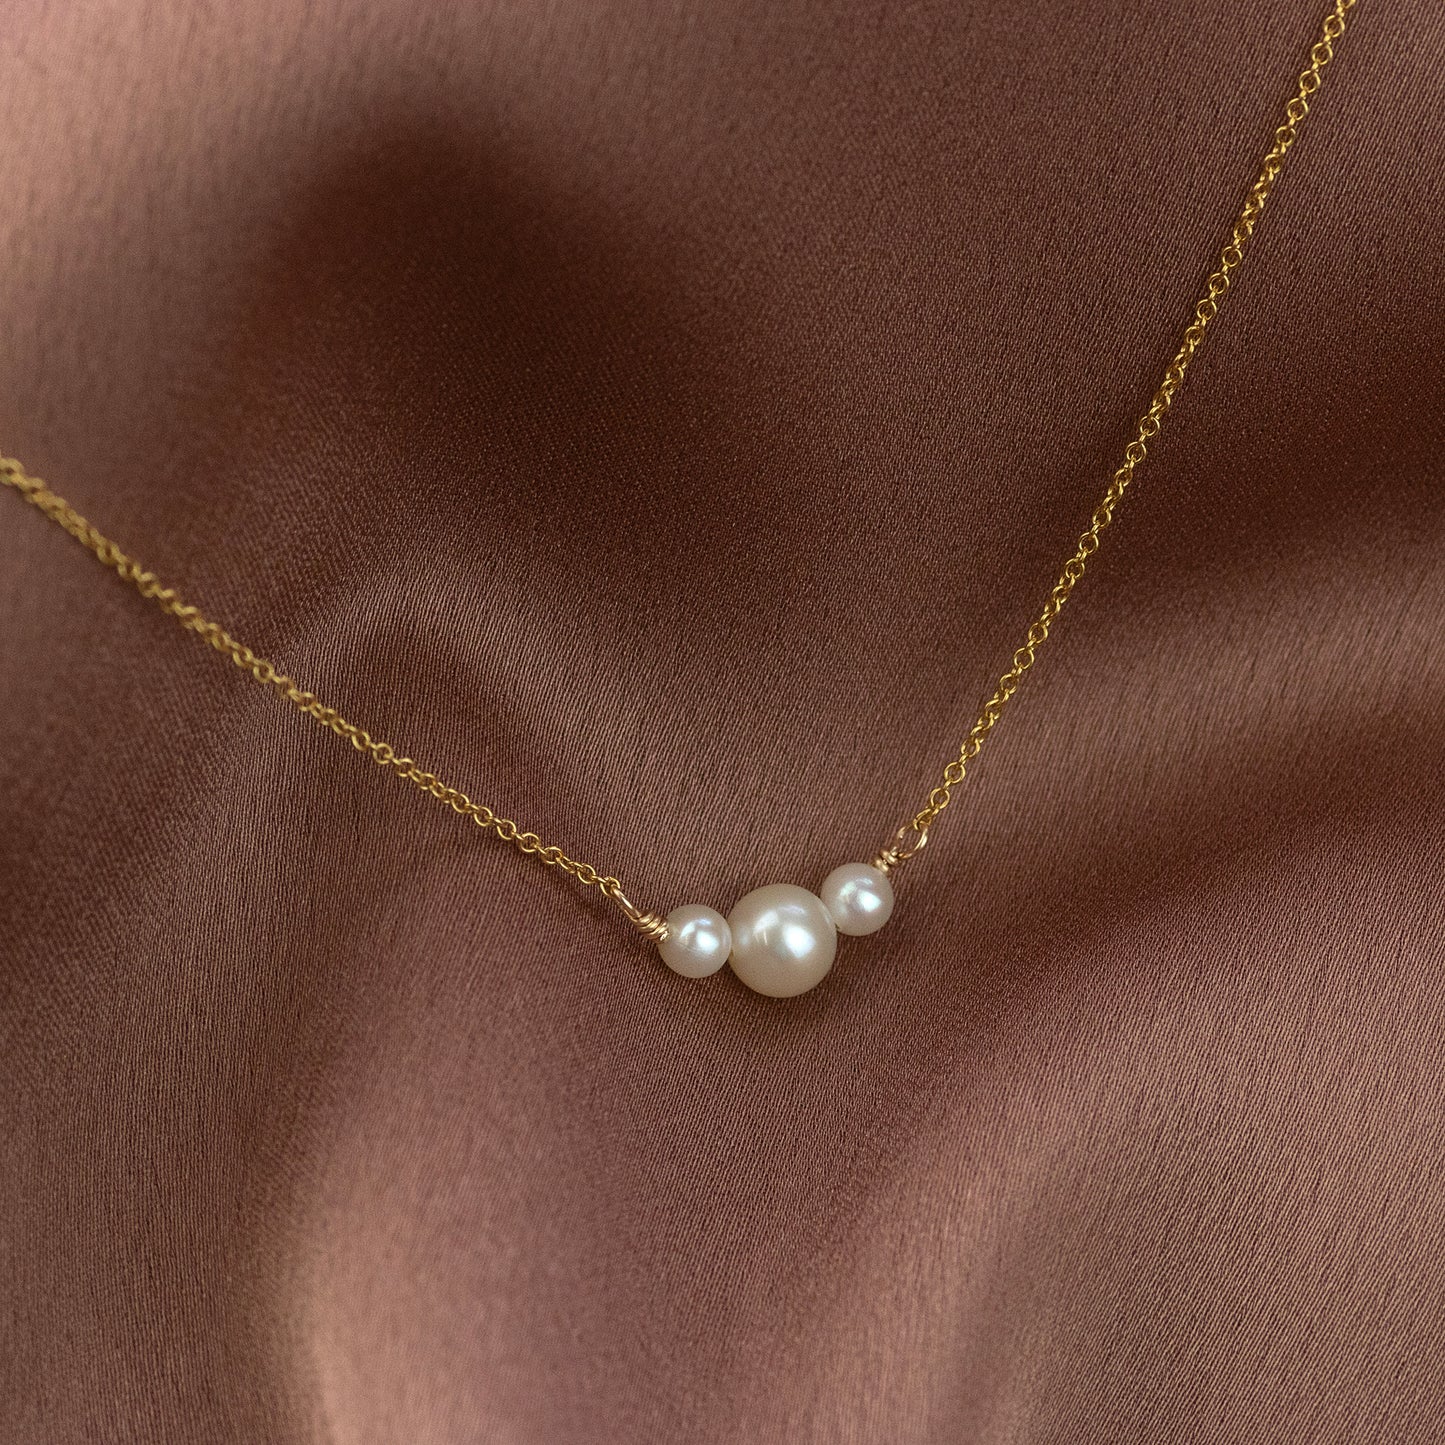 Pearl trio necklace, dainty bridesmaid necklace pearl - Trinity